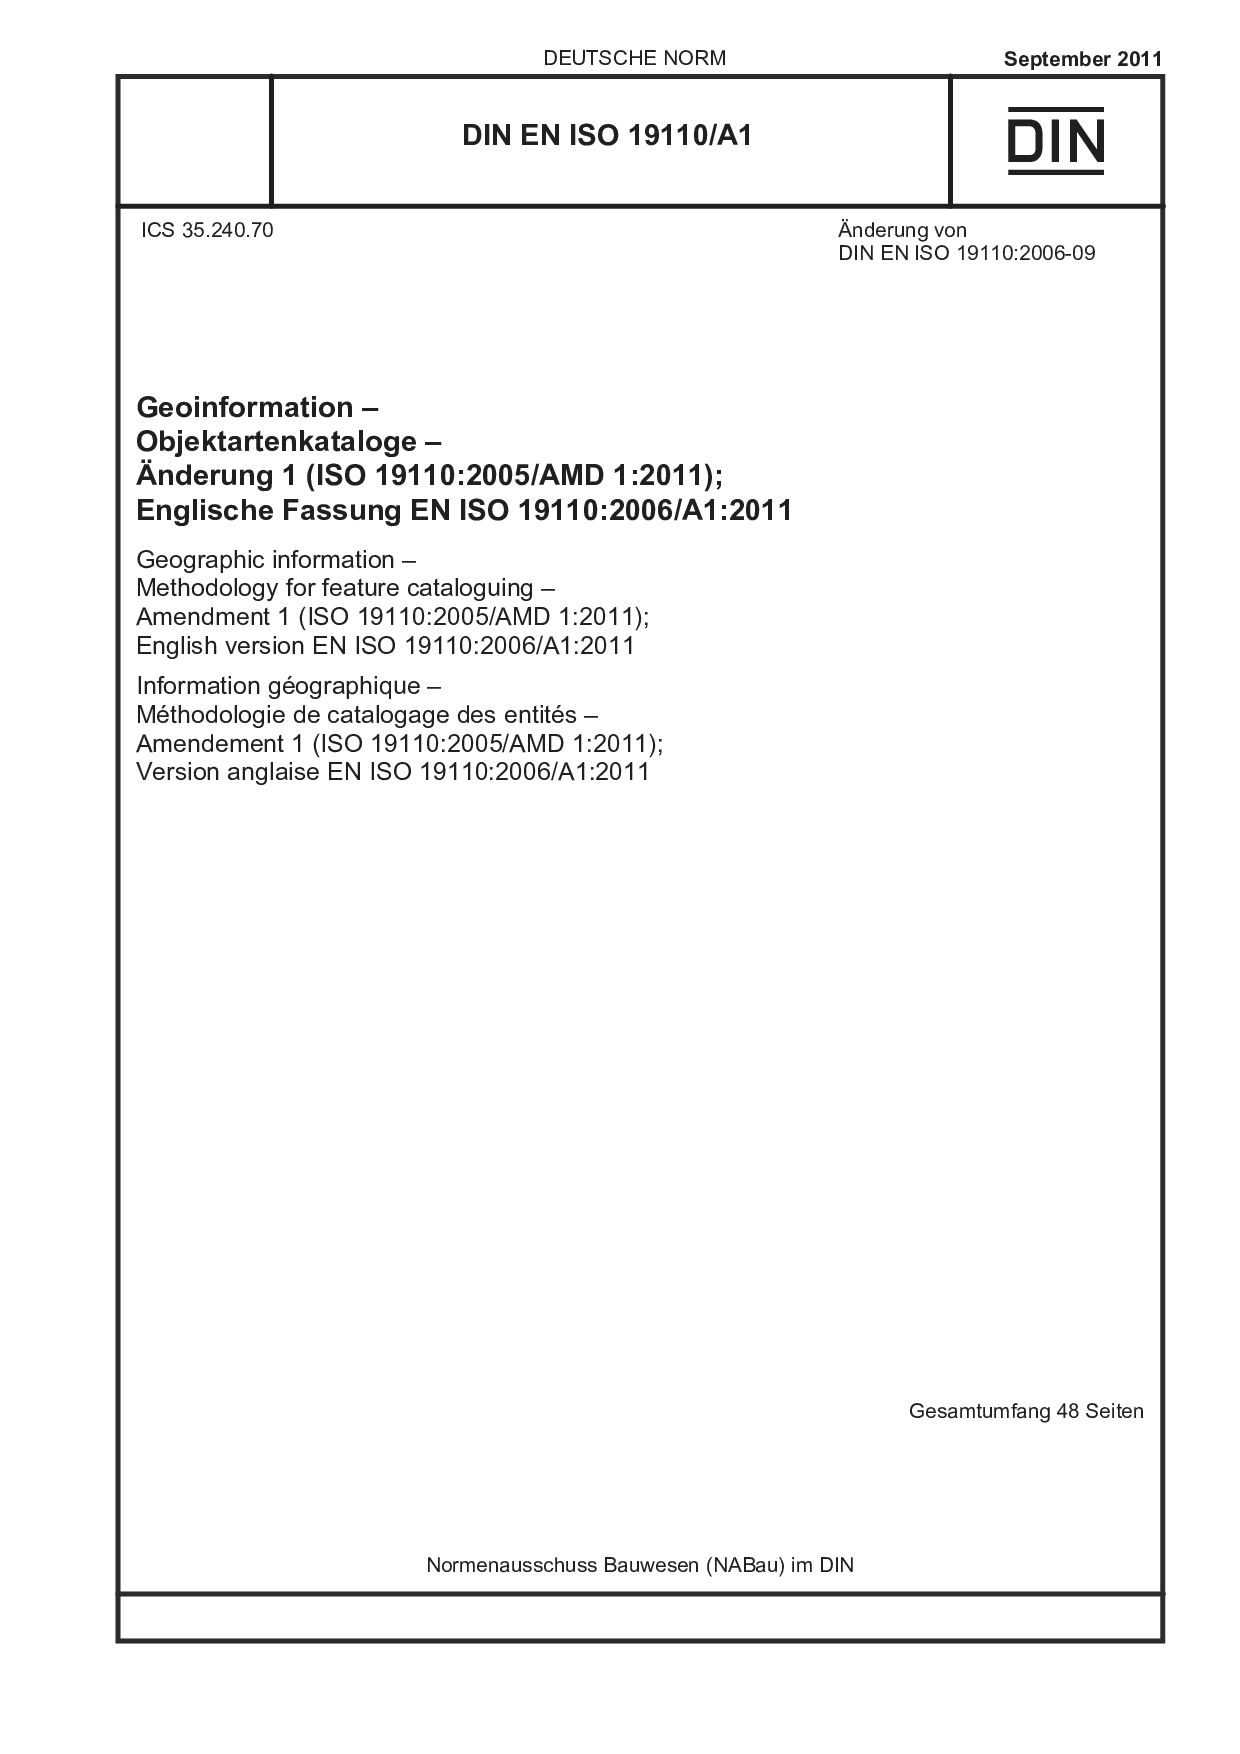 DIN EN ISO 19110/A1:2011